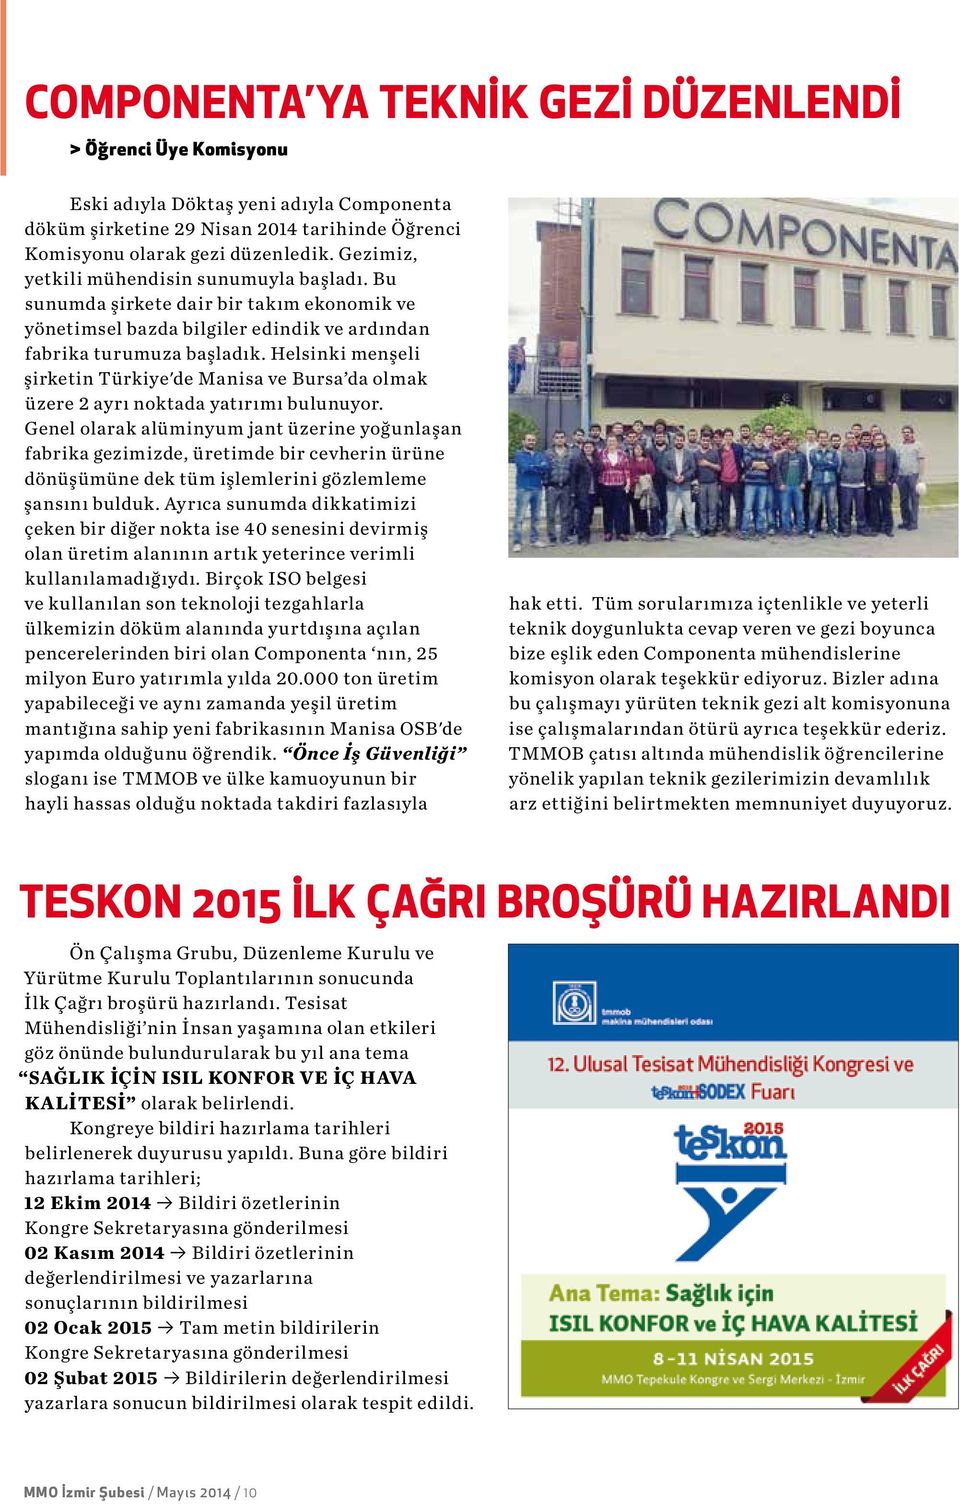 Helsinki menşeli şirketin Türkiye'de Manisa ve Bursa da olmak üzere 2 ayrı noktada yatırımı bulunuyor.